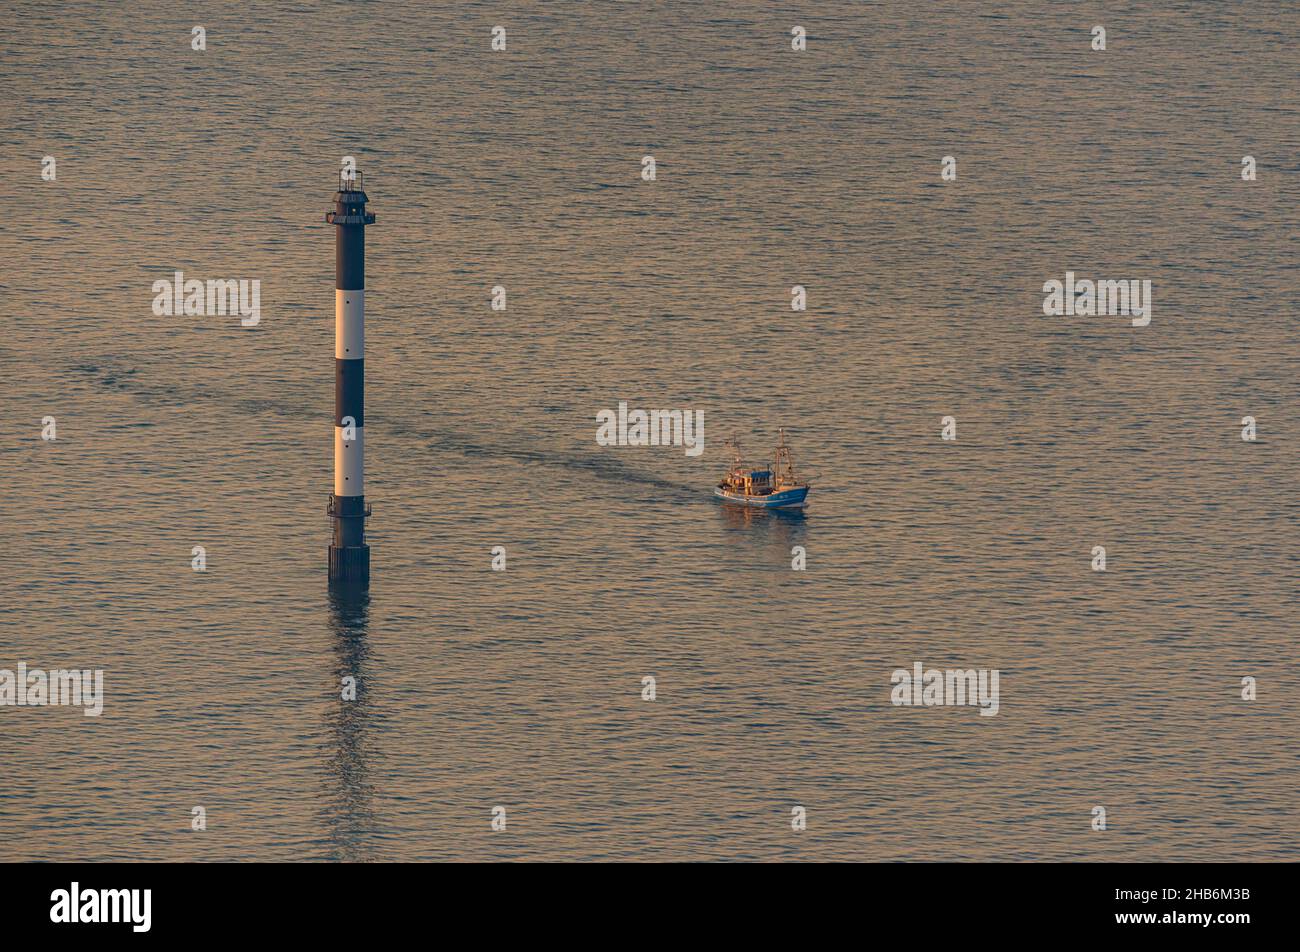 Cortador de pesca pasando por un marcador de fairway en el Mar del Norte en la zona del estuario del Elba, foto aérea, Alemania, Baja Sajonia, Cuxhaven Foto de stock